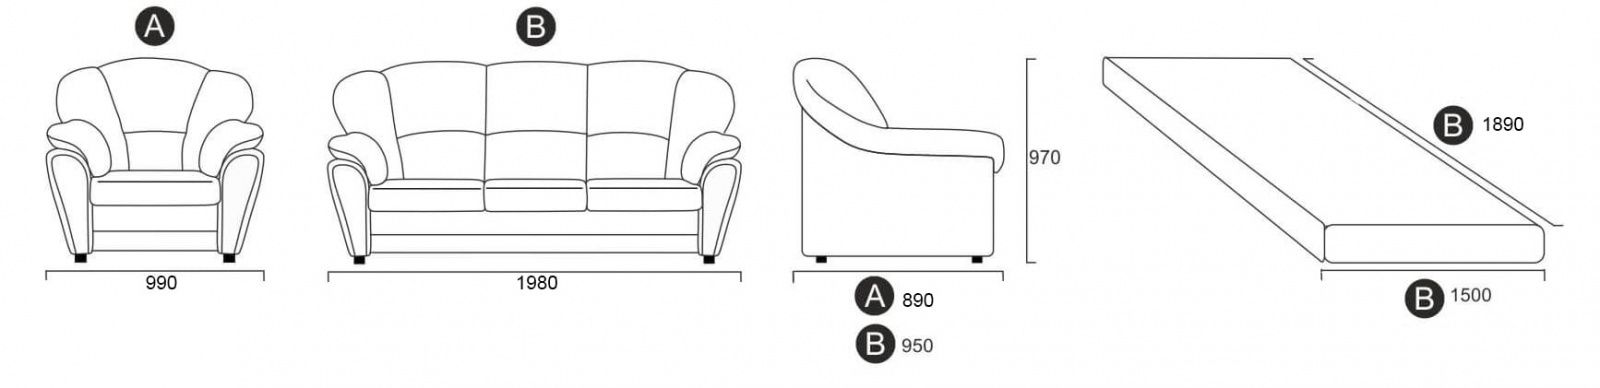 sofa-Hannover-size-min.jpg